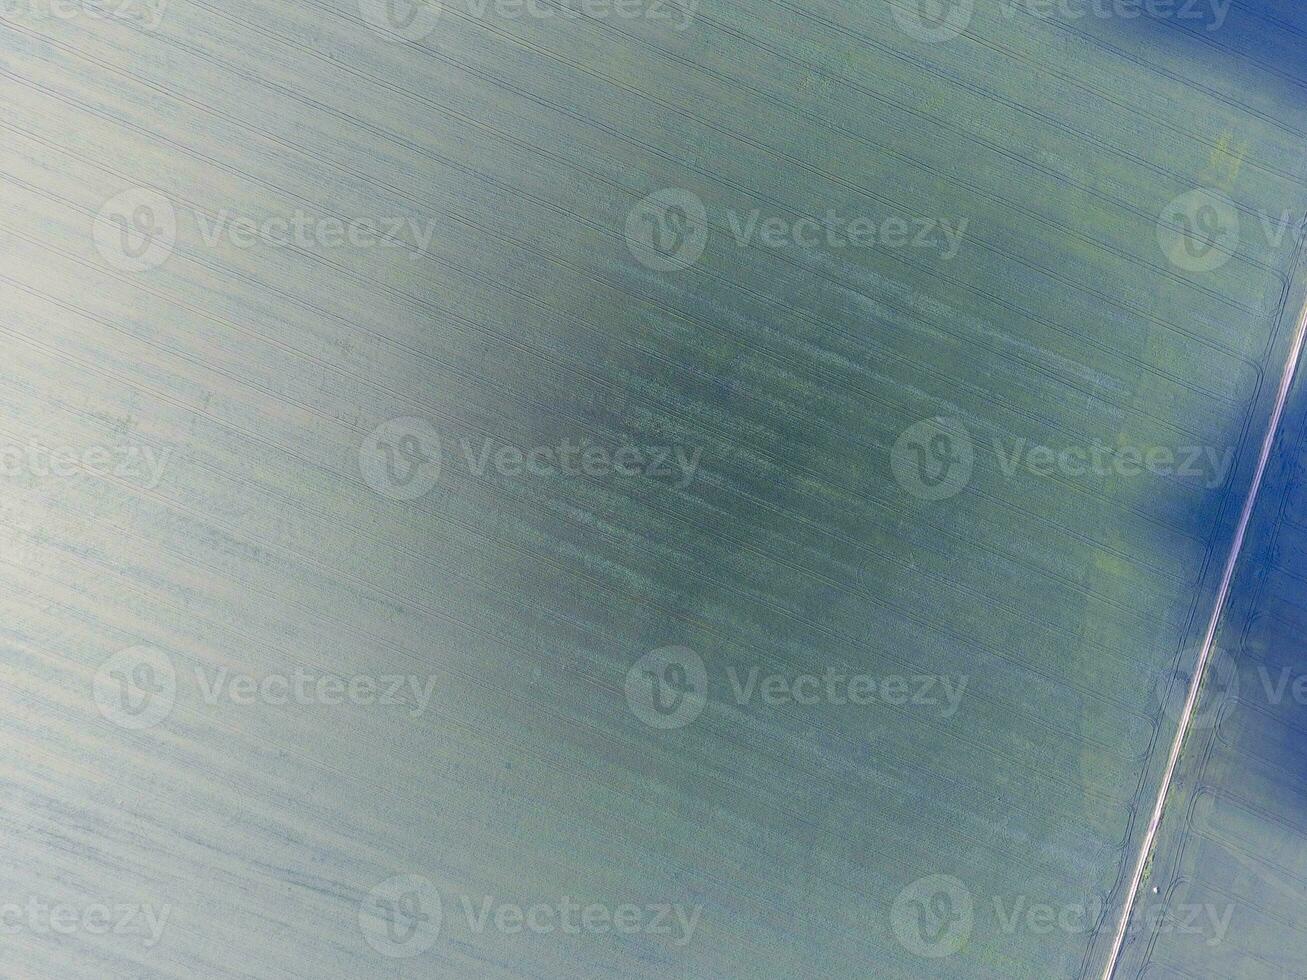 textura do trigo campo. fundo do jovem verde trigo em a campo. foto a partir de a quadrocopter. aéreo foto do a trigo campo